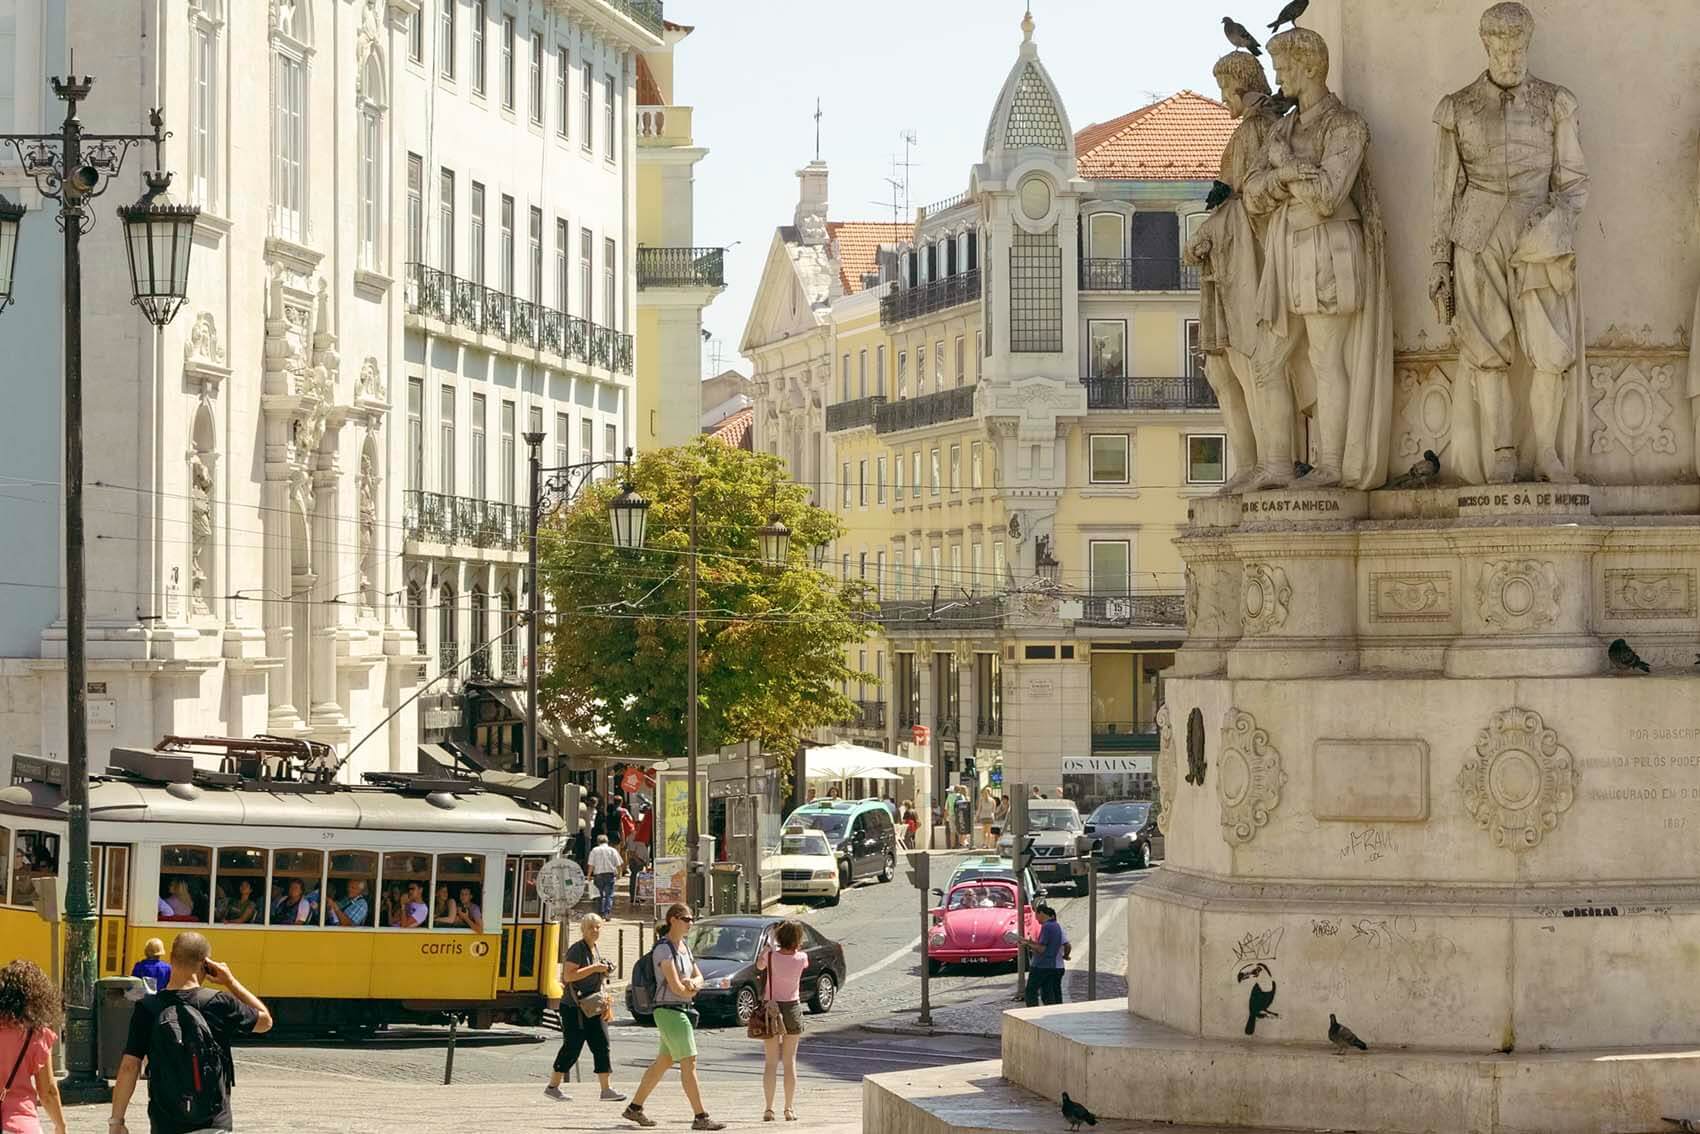 Lisboa - Tram 28 durchquert das Viertel Chiado  | © Turismo de Lisboa |